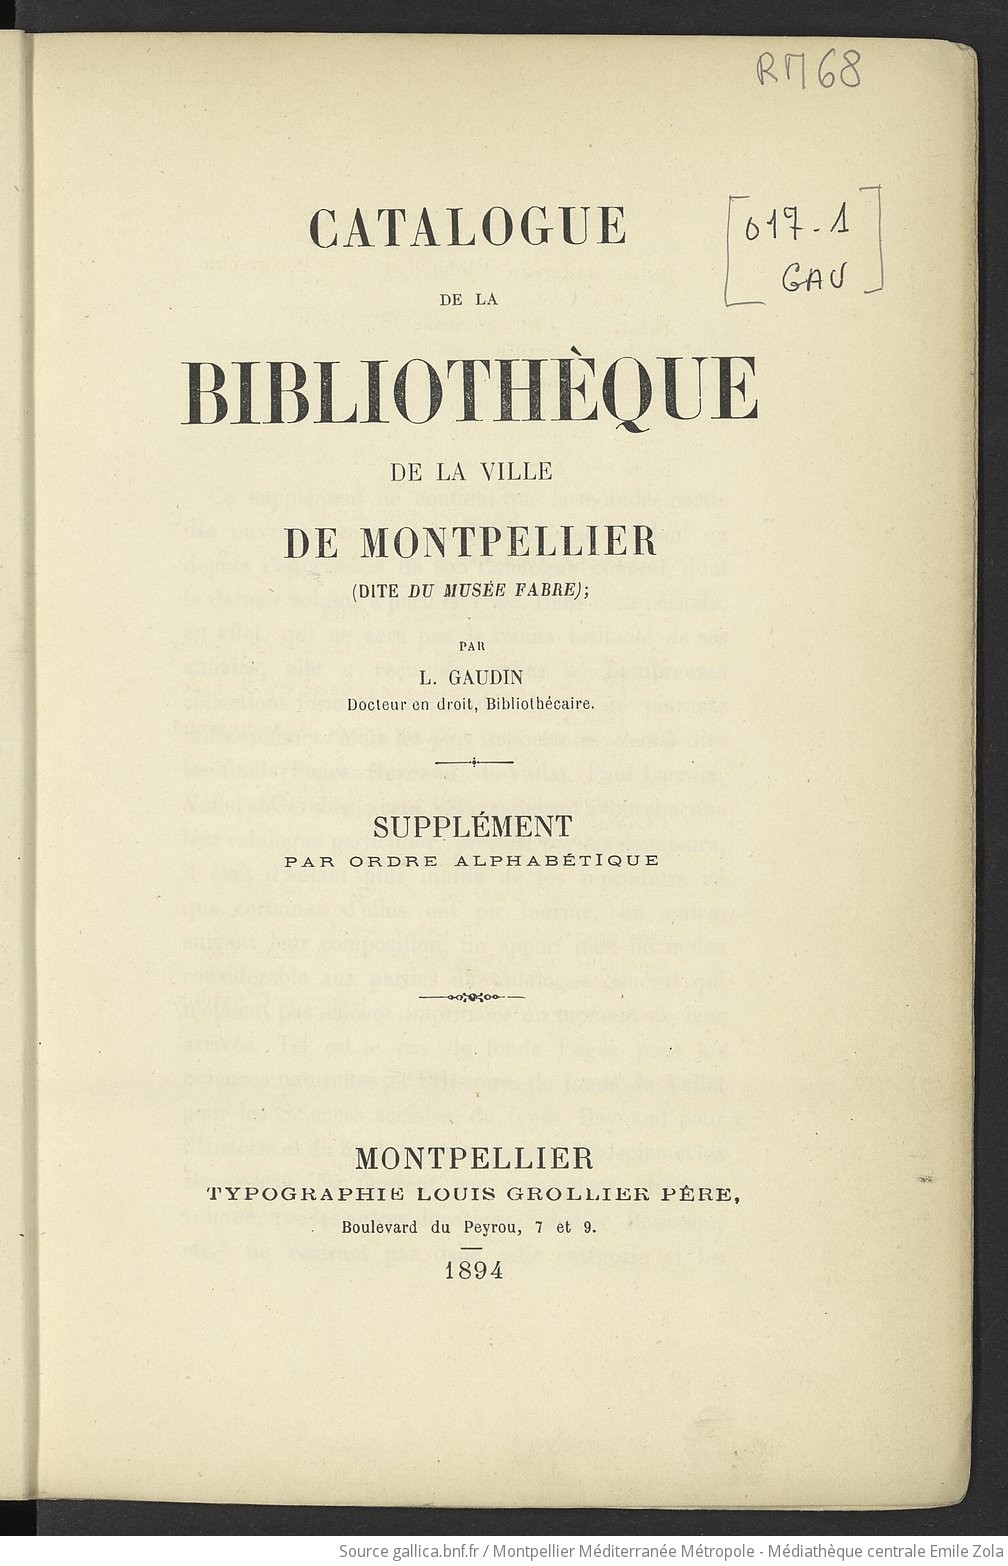 Catalogue de la Bibliothèque de la ville de Montpellier, dite du Musée Fabre